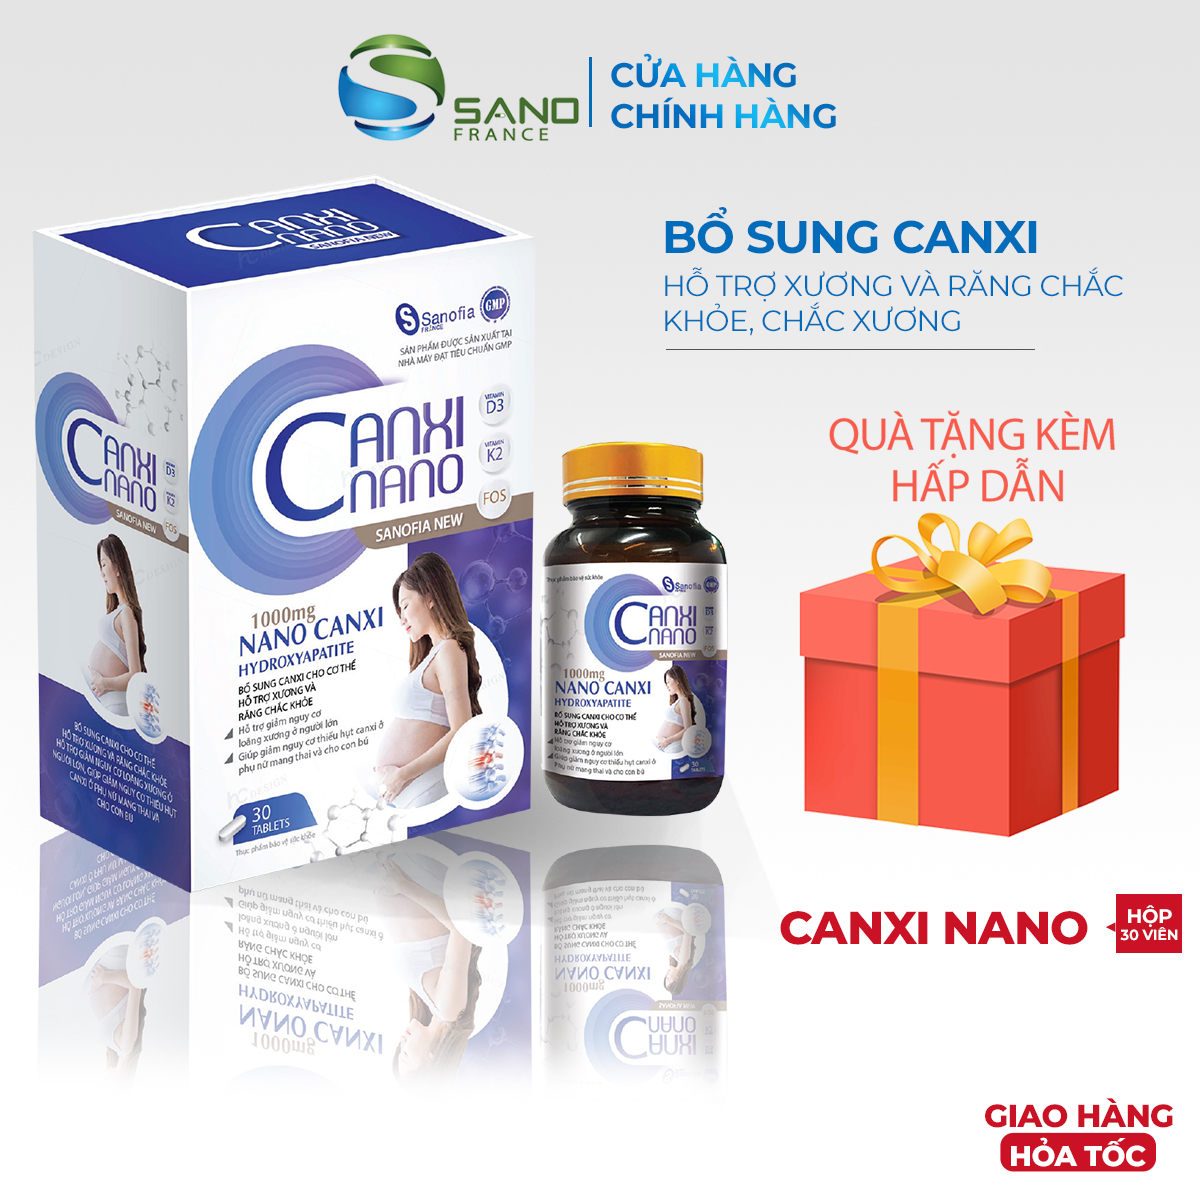 Viên Canxi bổ bầu Canxi Nano Sanofia Hộp 30 viên- Giúp bổ sung Canxi, hỗ trợ xương răng chắc khỏe, giảm thiếu hụt Canxi tăng cường sức khỏe cho mẹ và bé